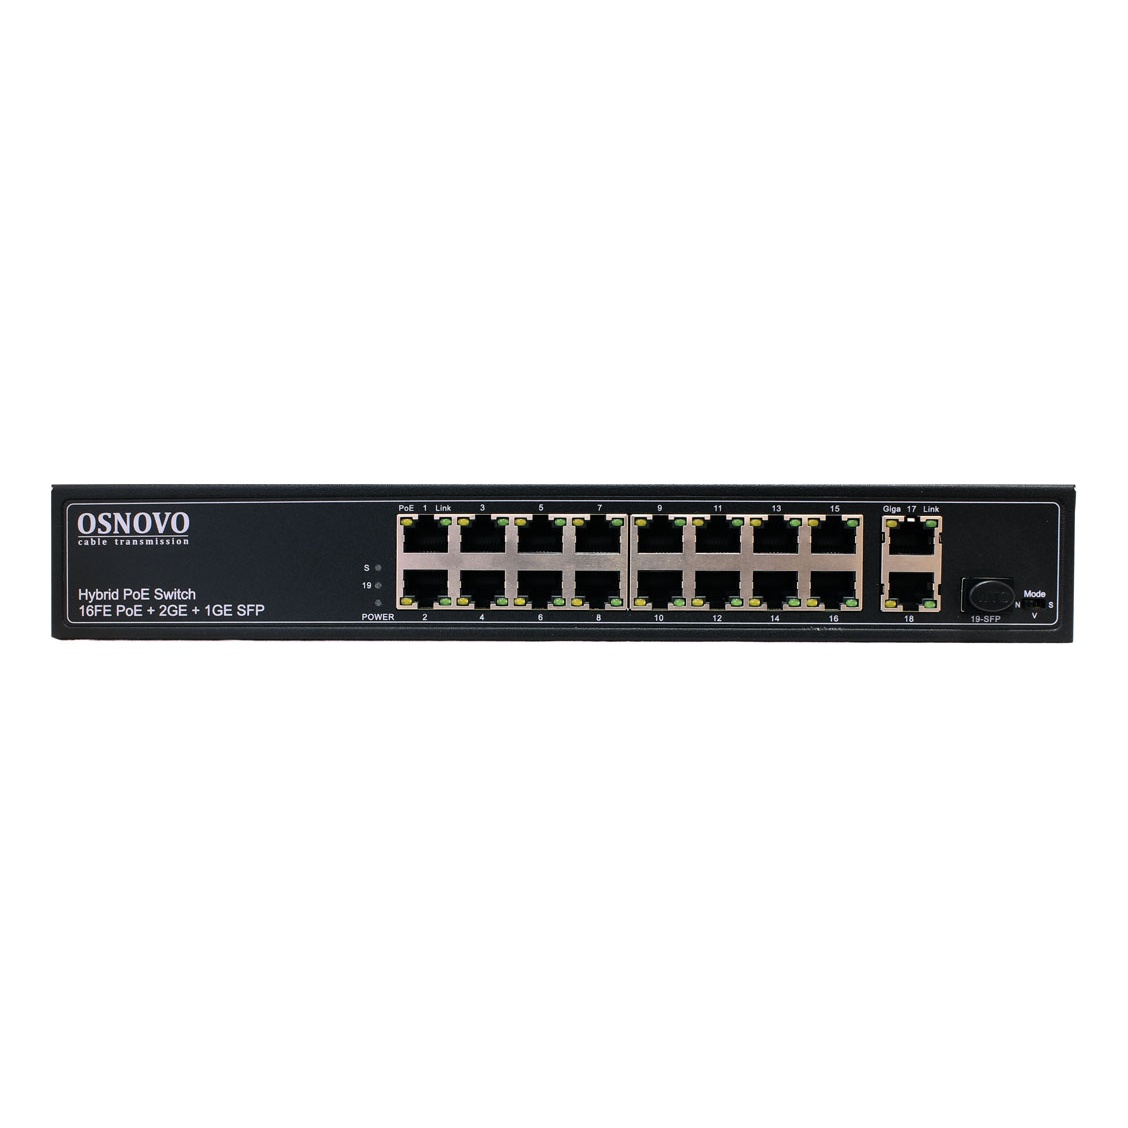 OSNOVO SW-61621(300W) SW-61621(300W) PoE коммутатор Fast Ethernet на 16 x RJ45 PoE + 2 x RJ45 GE + 1 SFP GE порта